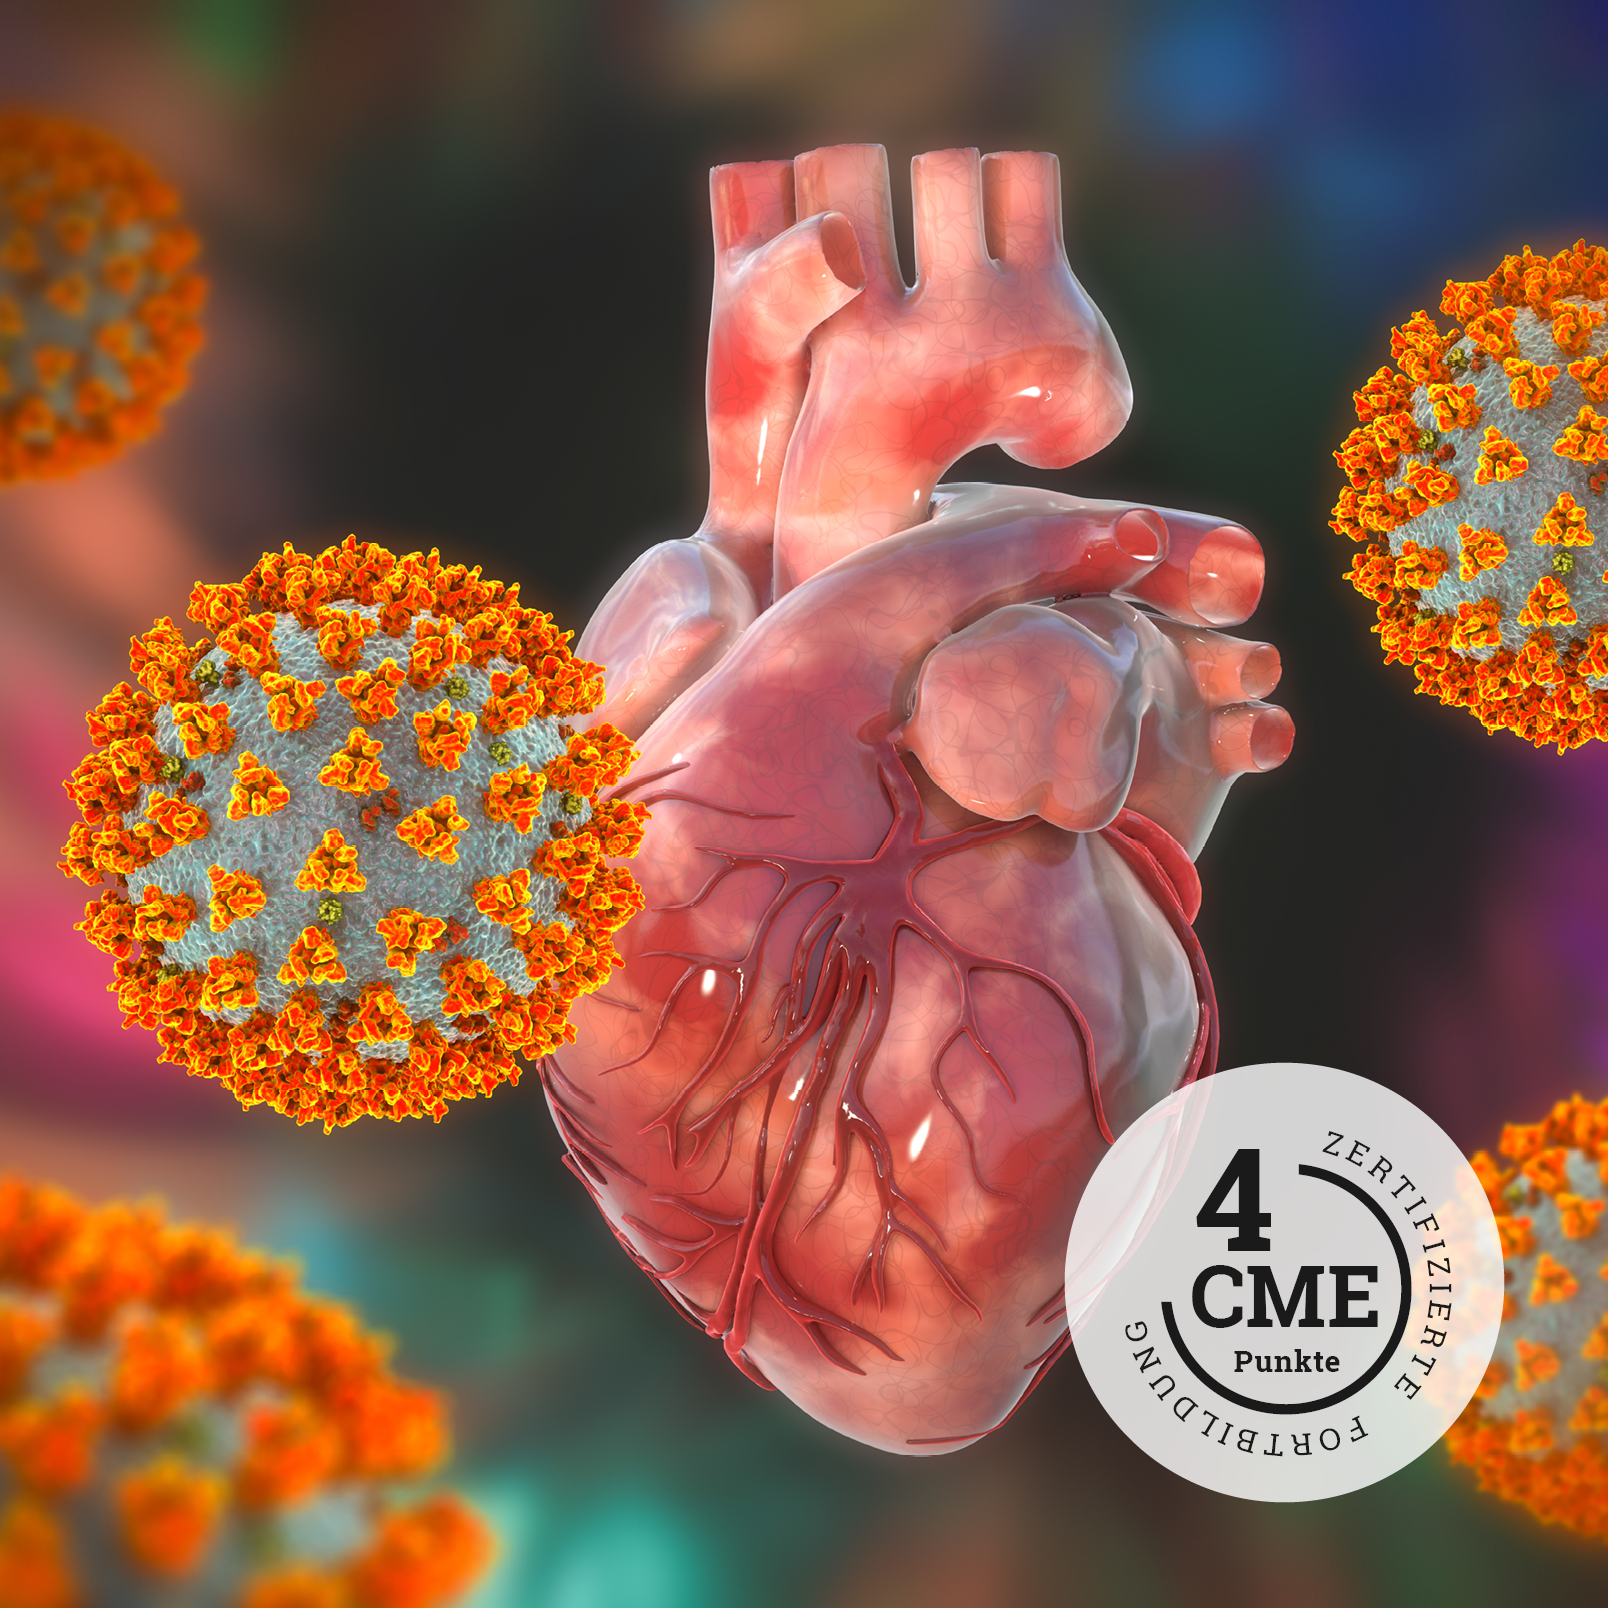 CME zu COVID-19-Pandemie und Herzinsuffizienz